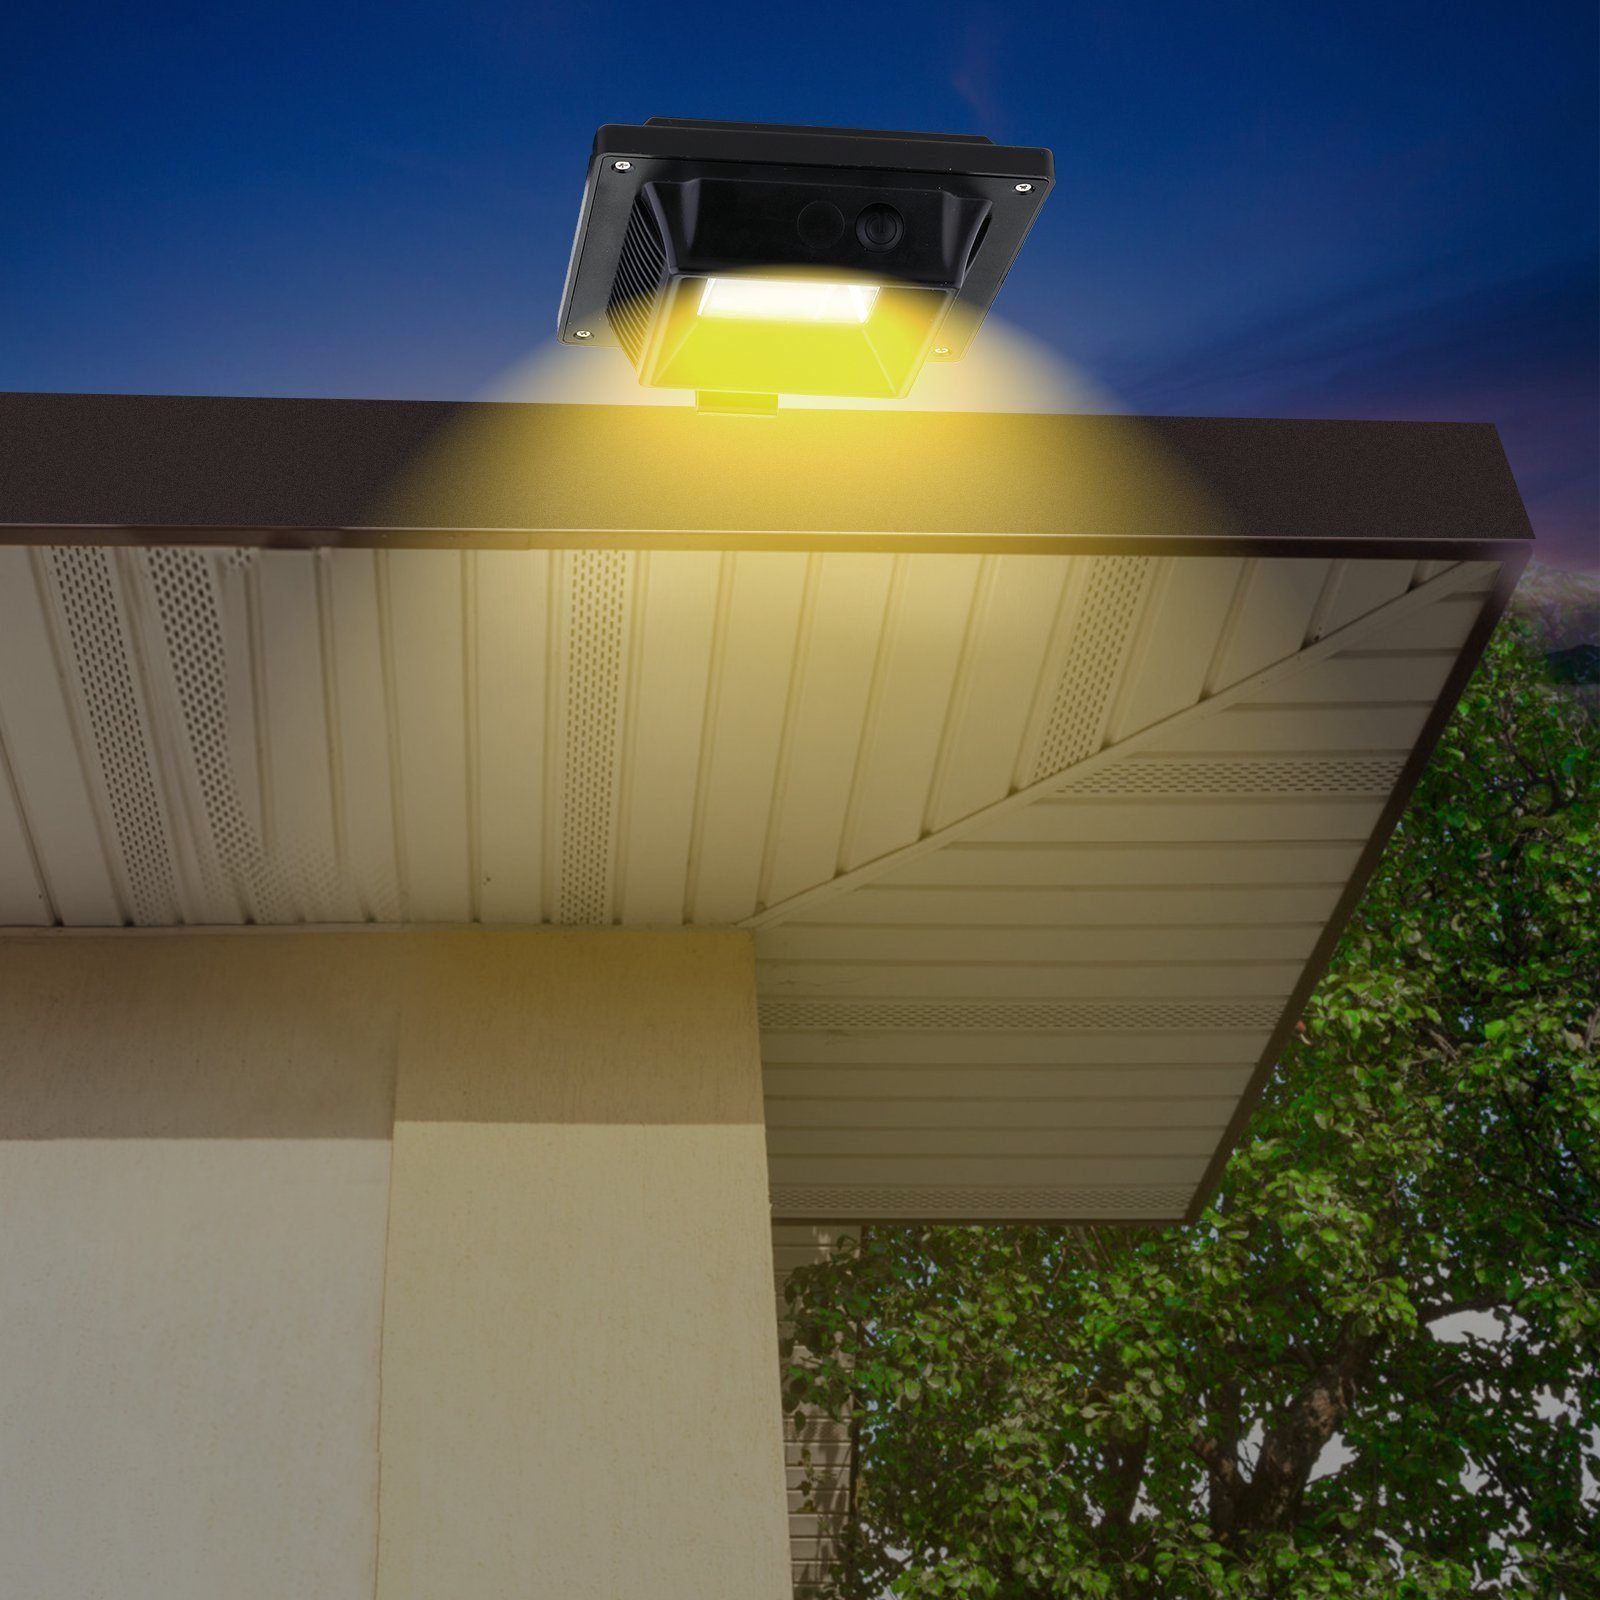 Home 6Stk.40LEDs Regenrinne, Solar safety Lichtsensor Dachrinnenleuchte